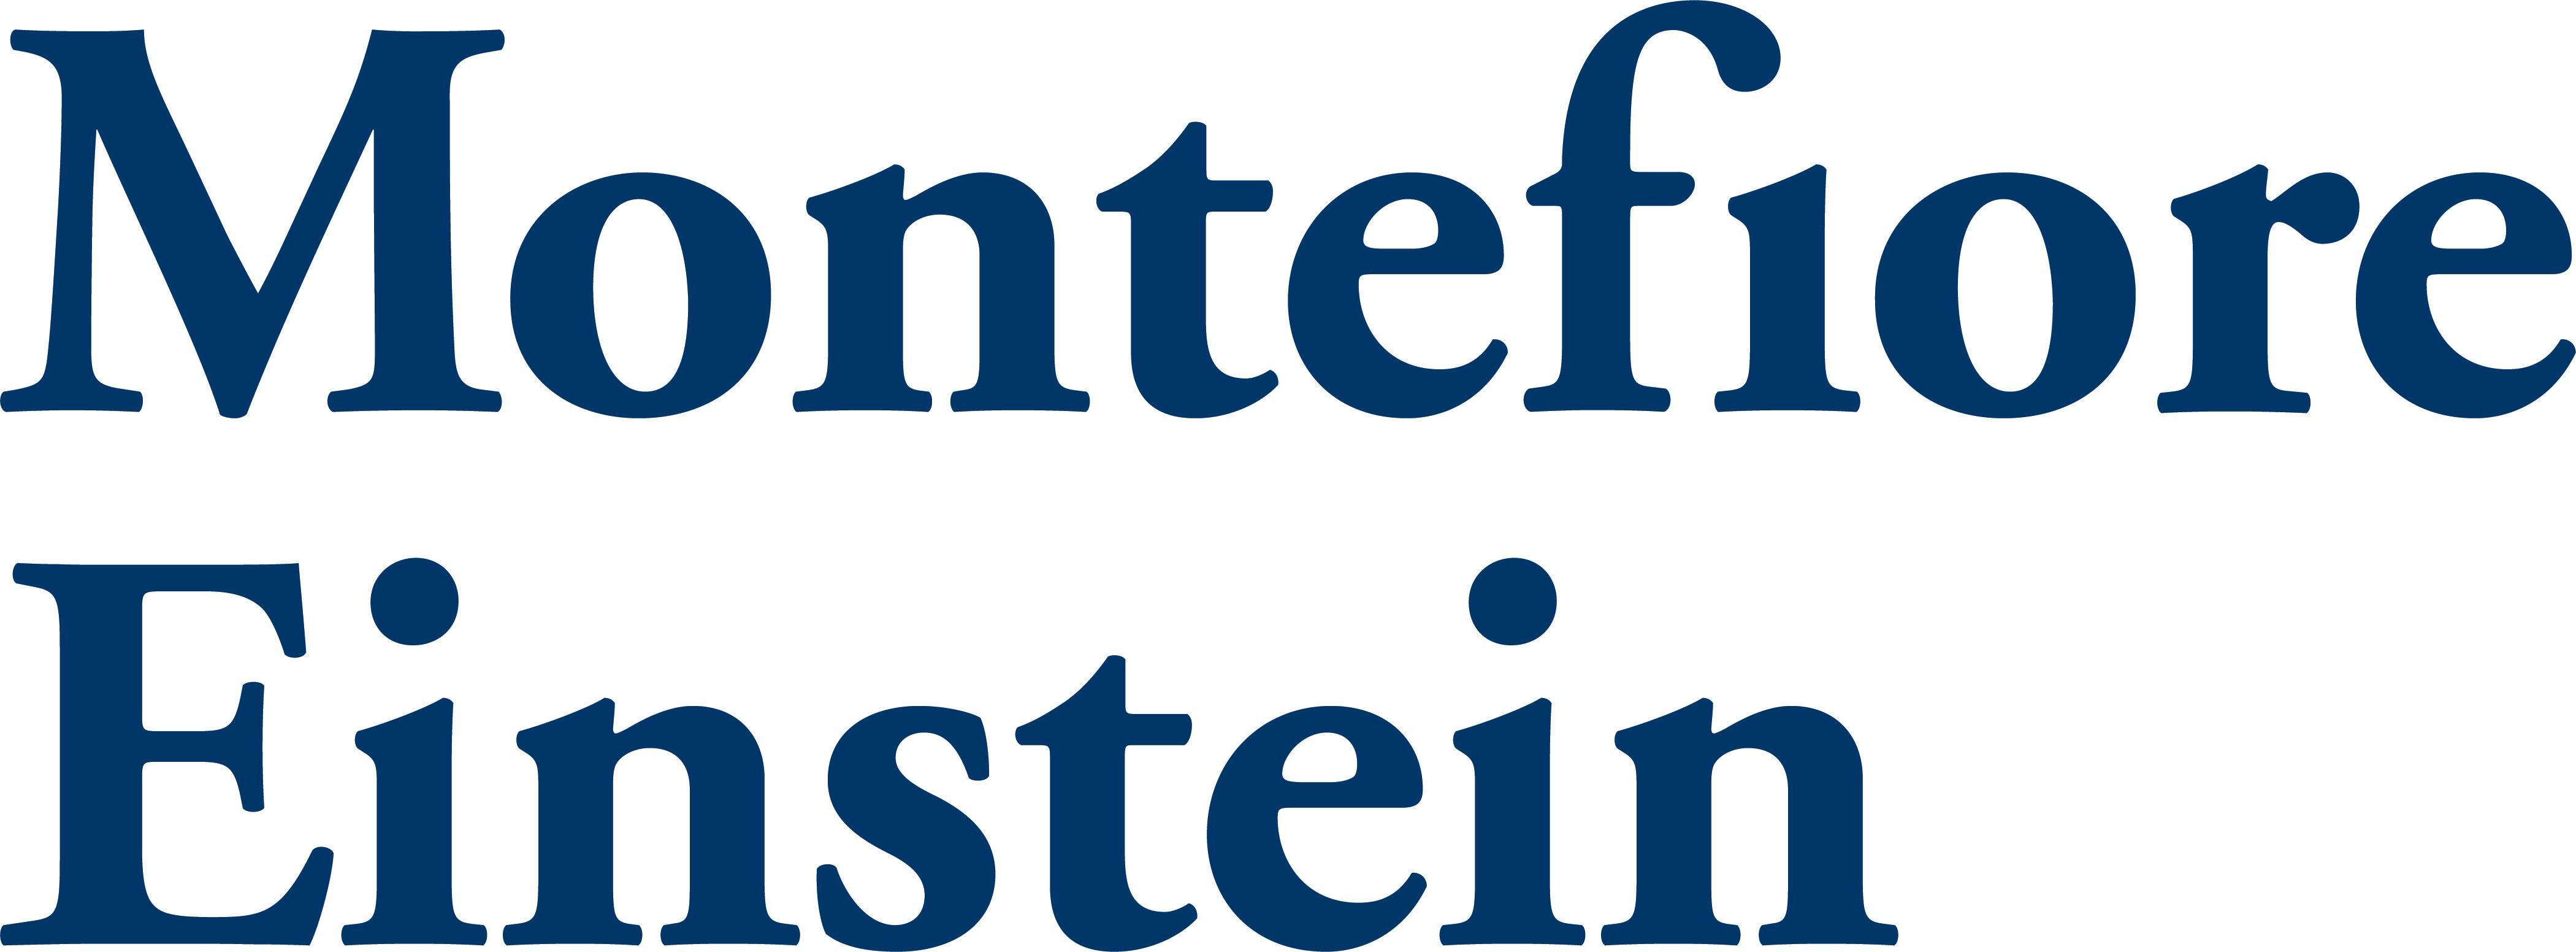 Montefiore Einstein logo